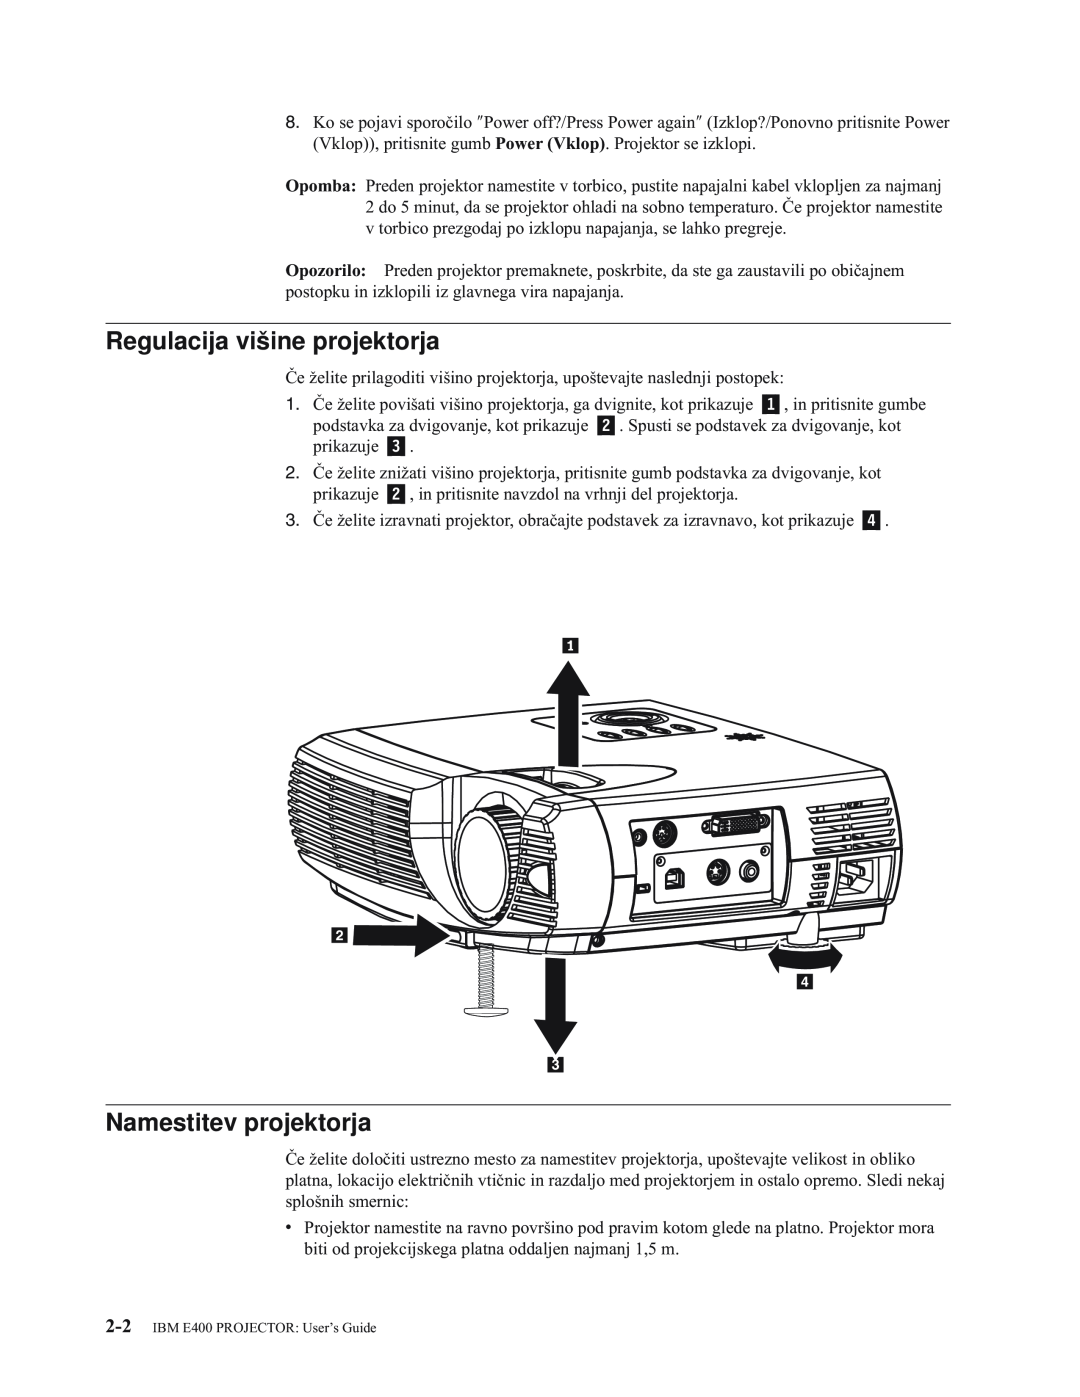 IBM manual Regulacija višine projektorja, Namestitev projektorja, IBM E400 PROJECTOR User’s Guide 